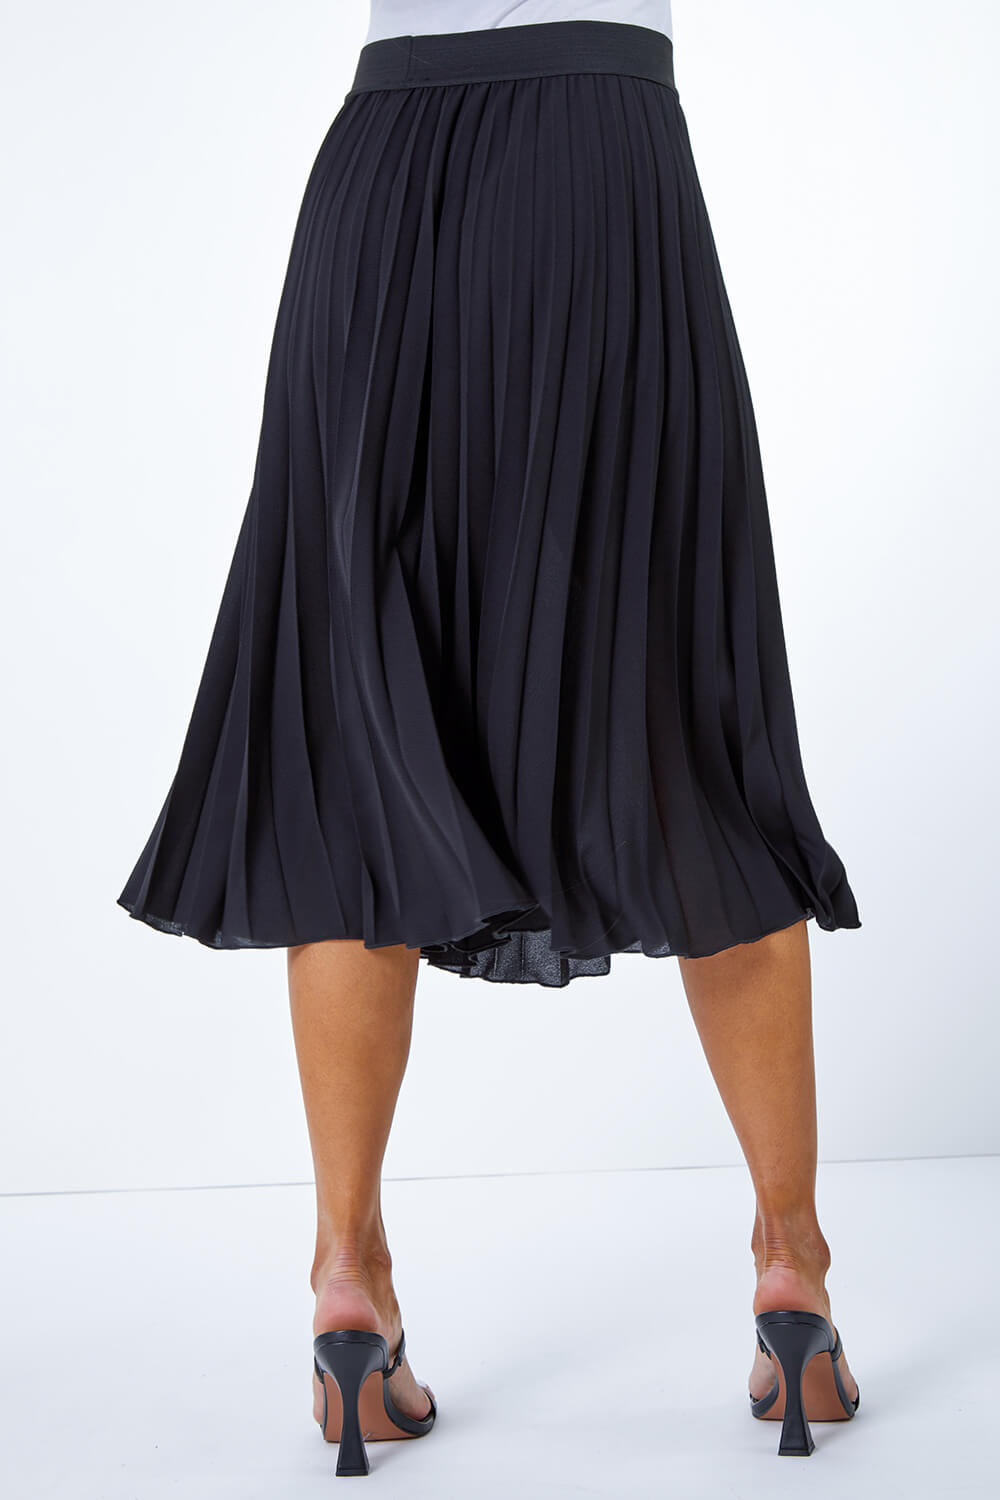 Petite Pleated Midi Skirt in Black - Roman Originals UK